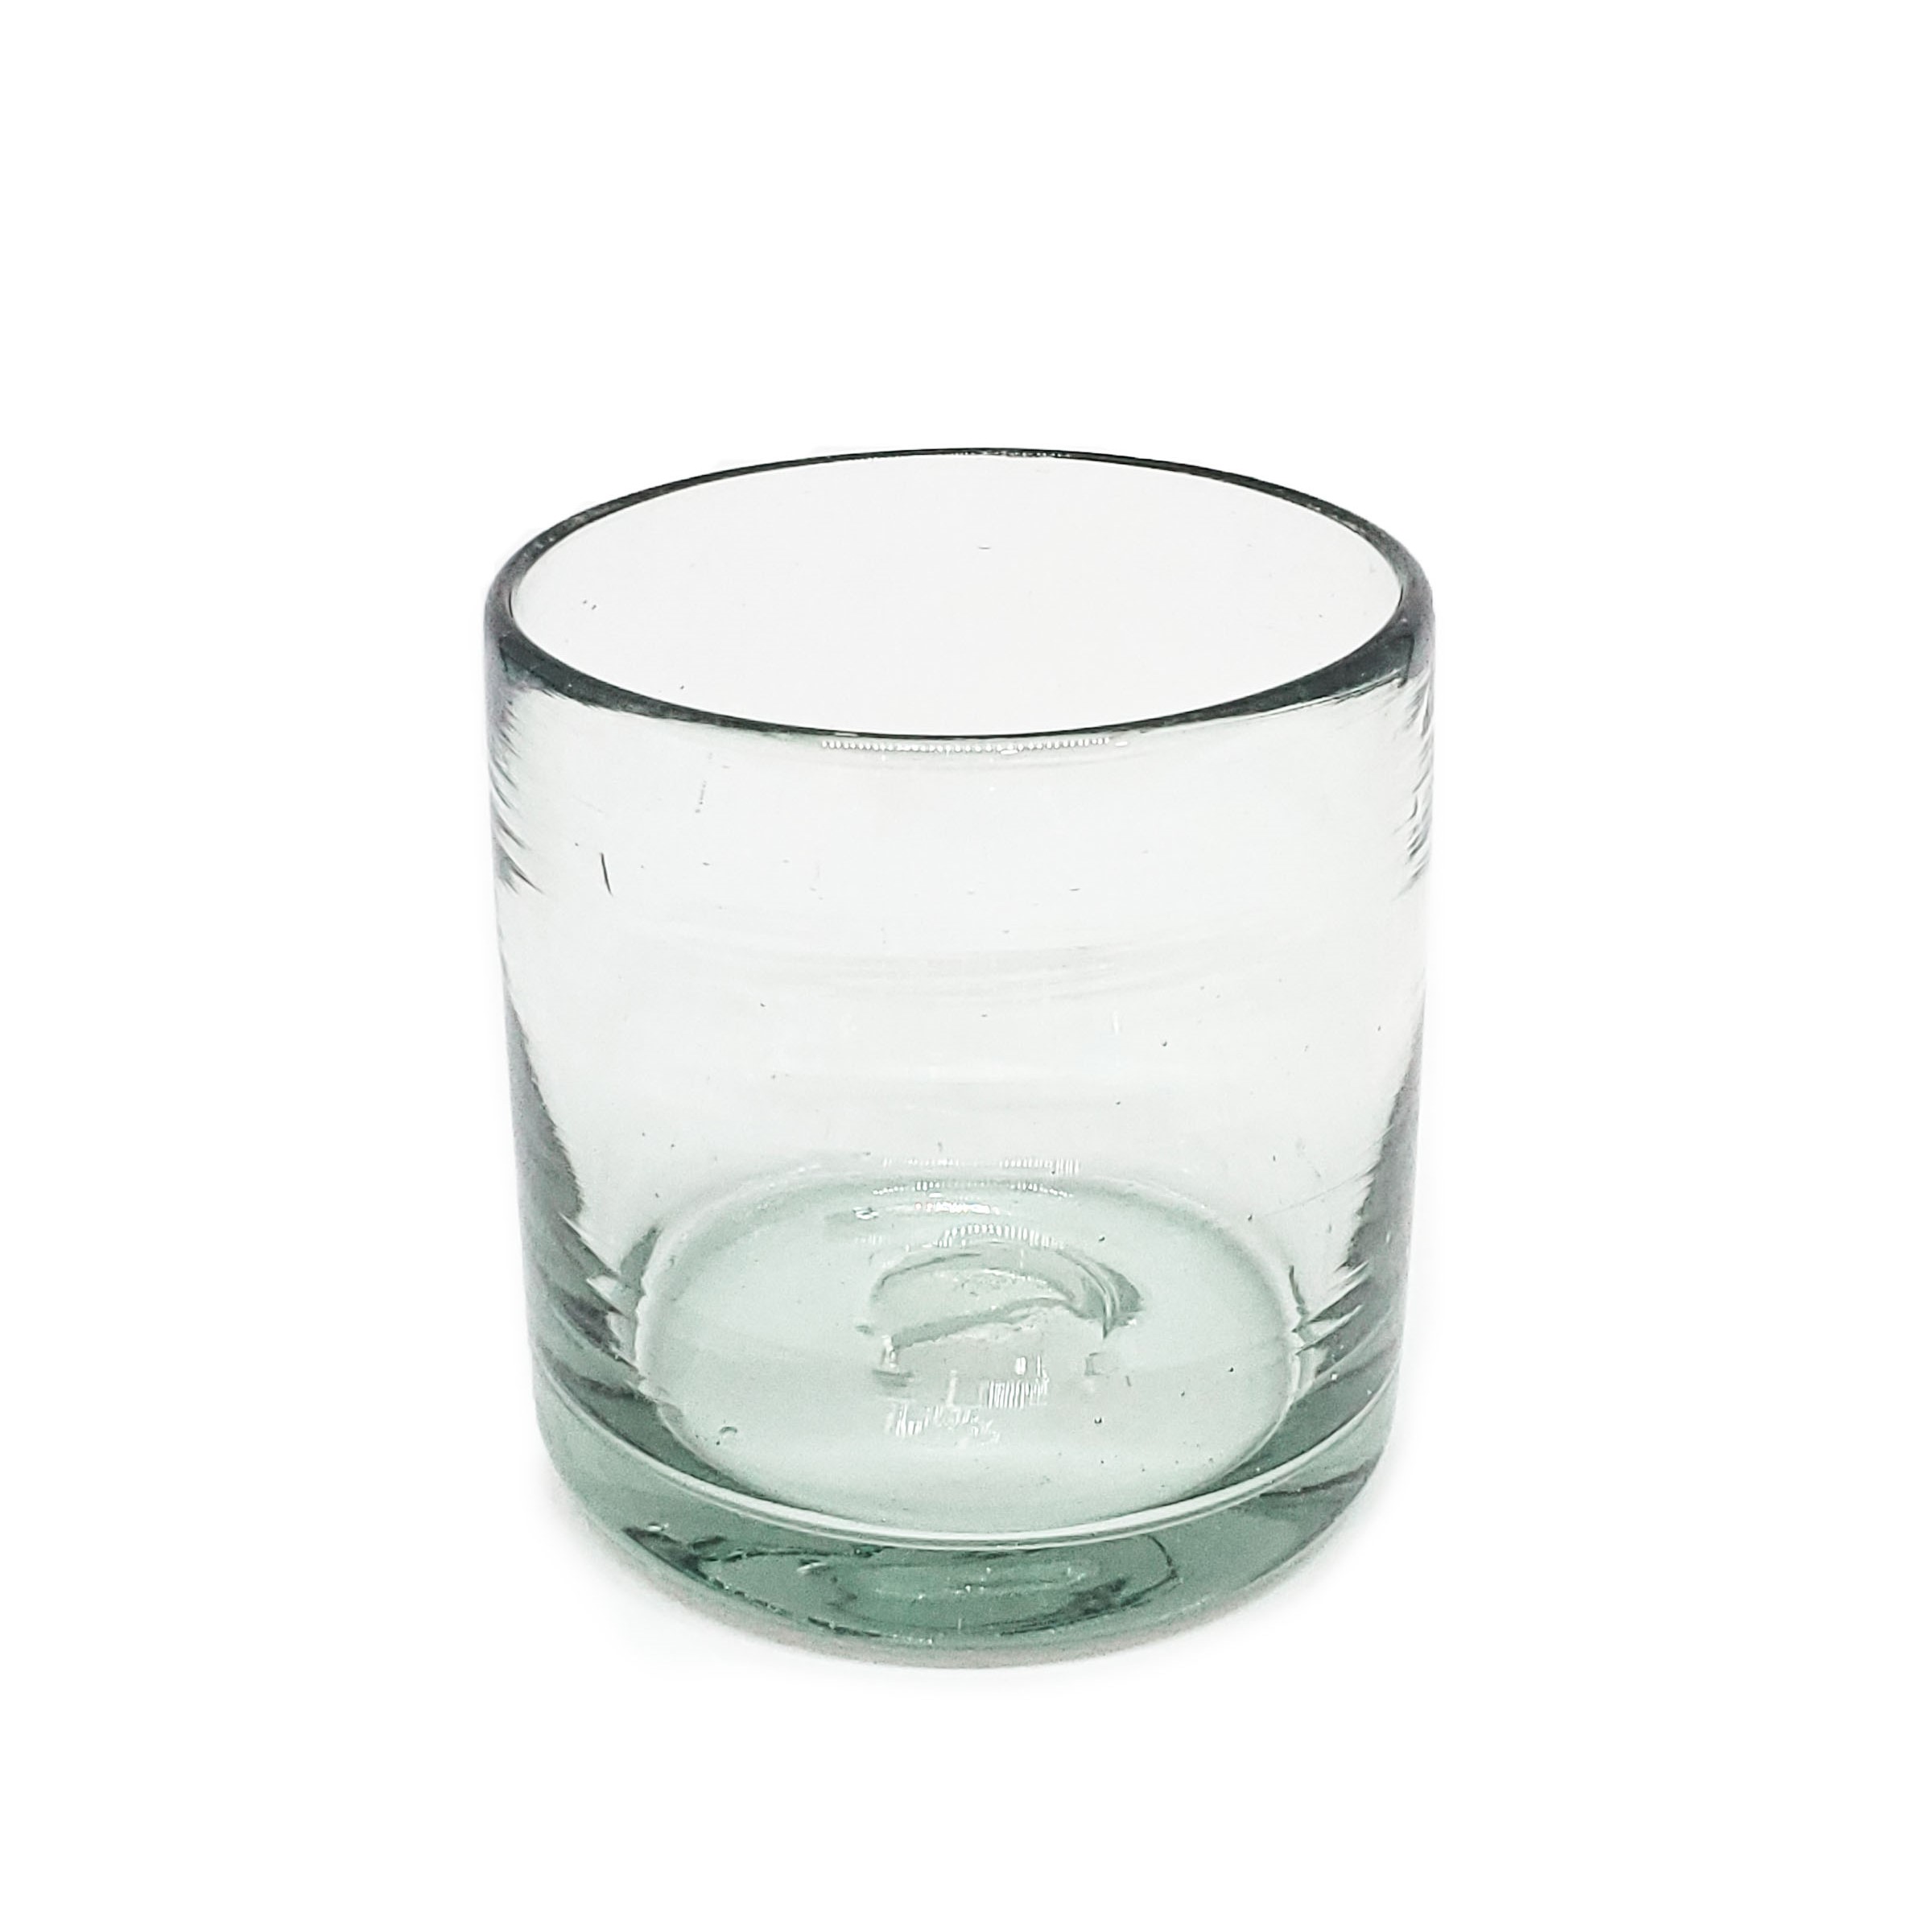 VIDRIO SOPLADO / Juego de 6 vasos DOF 8oz Transparentes / Éstos artesanales vasos le darán un toque clásico a su bebida favorita.